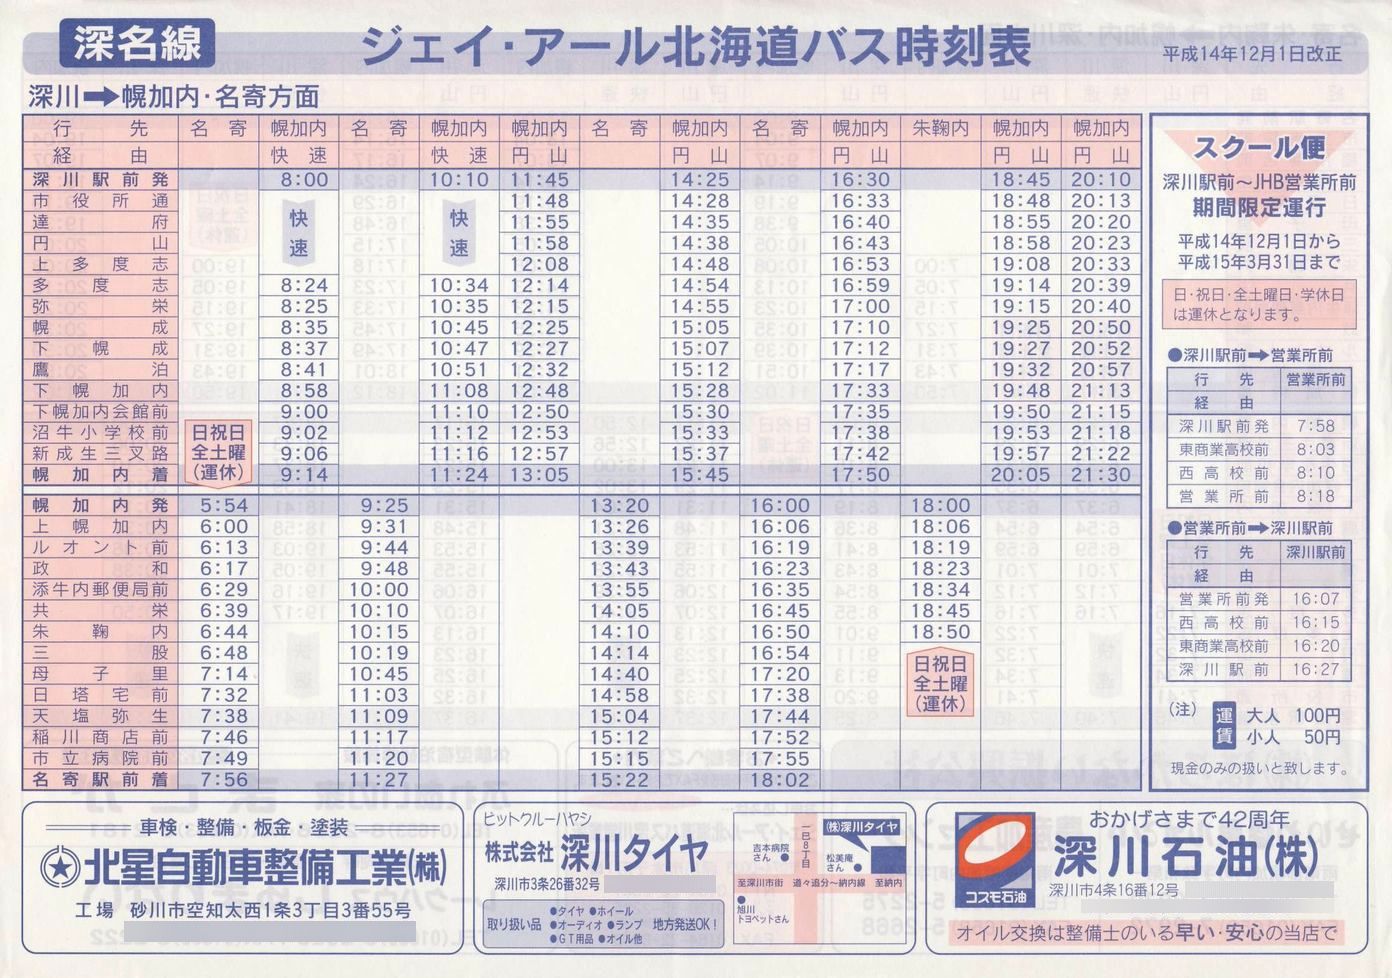 2002-12-01改正_ジェイ・アール北海道バス_深名線時刻表表面